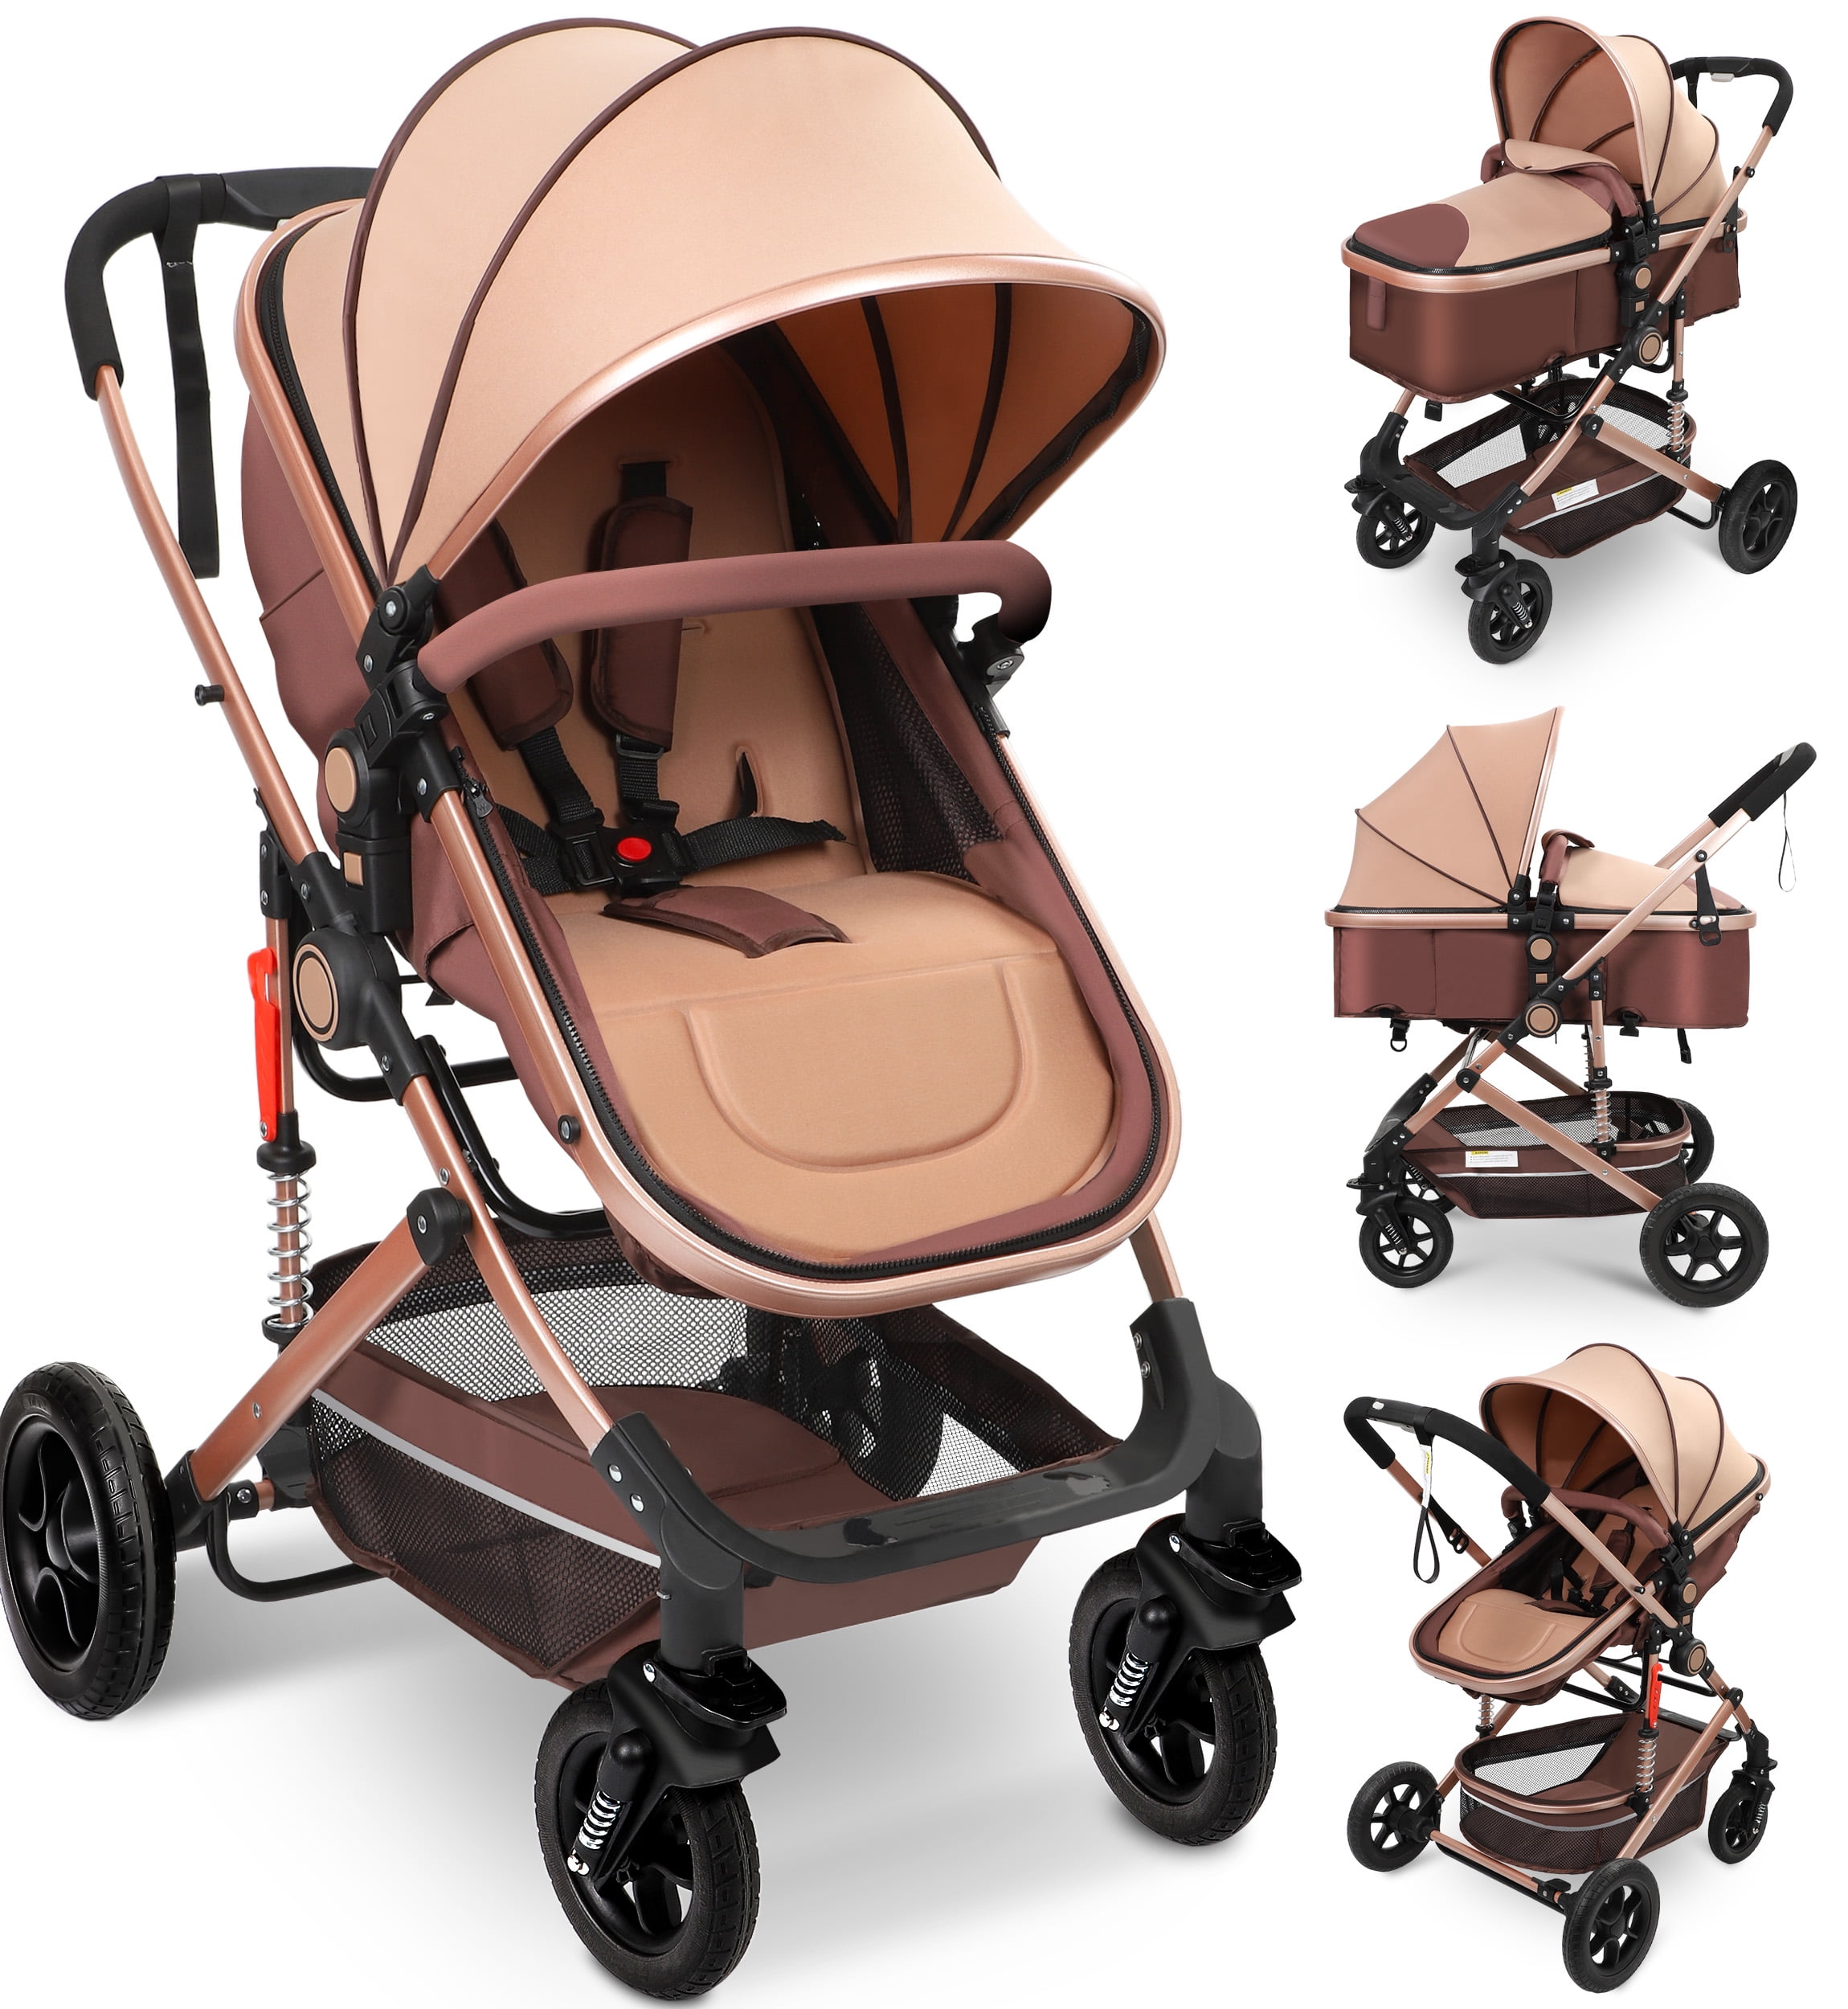 Vomeast Baby Stroller, Foldable Baby Stroller Reversible Bassinet, Travel Stroller for Newborn Baby, Khaki - image 1 of 10